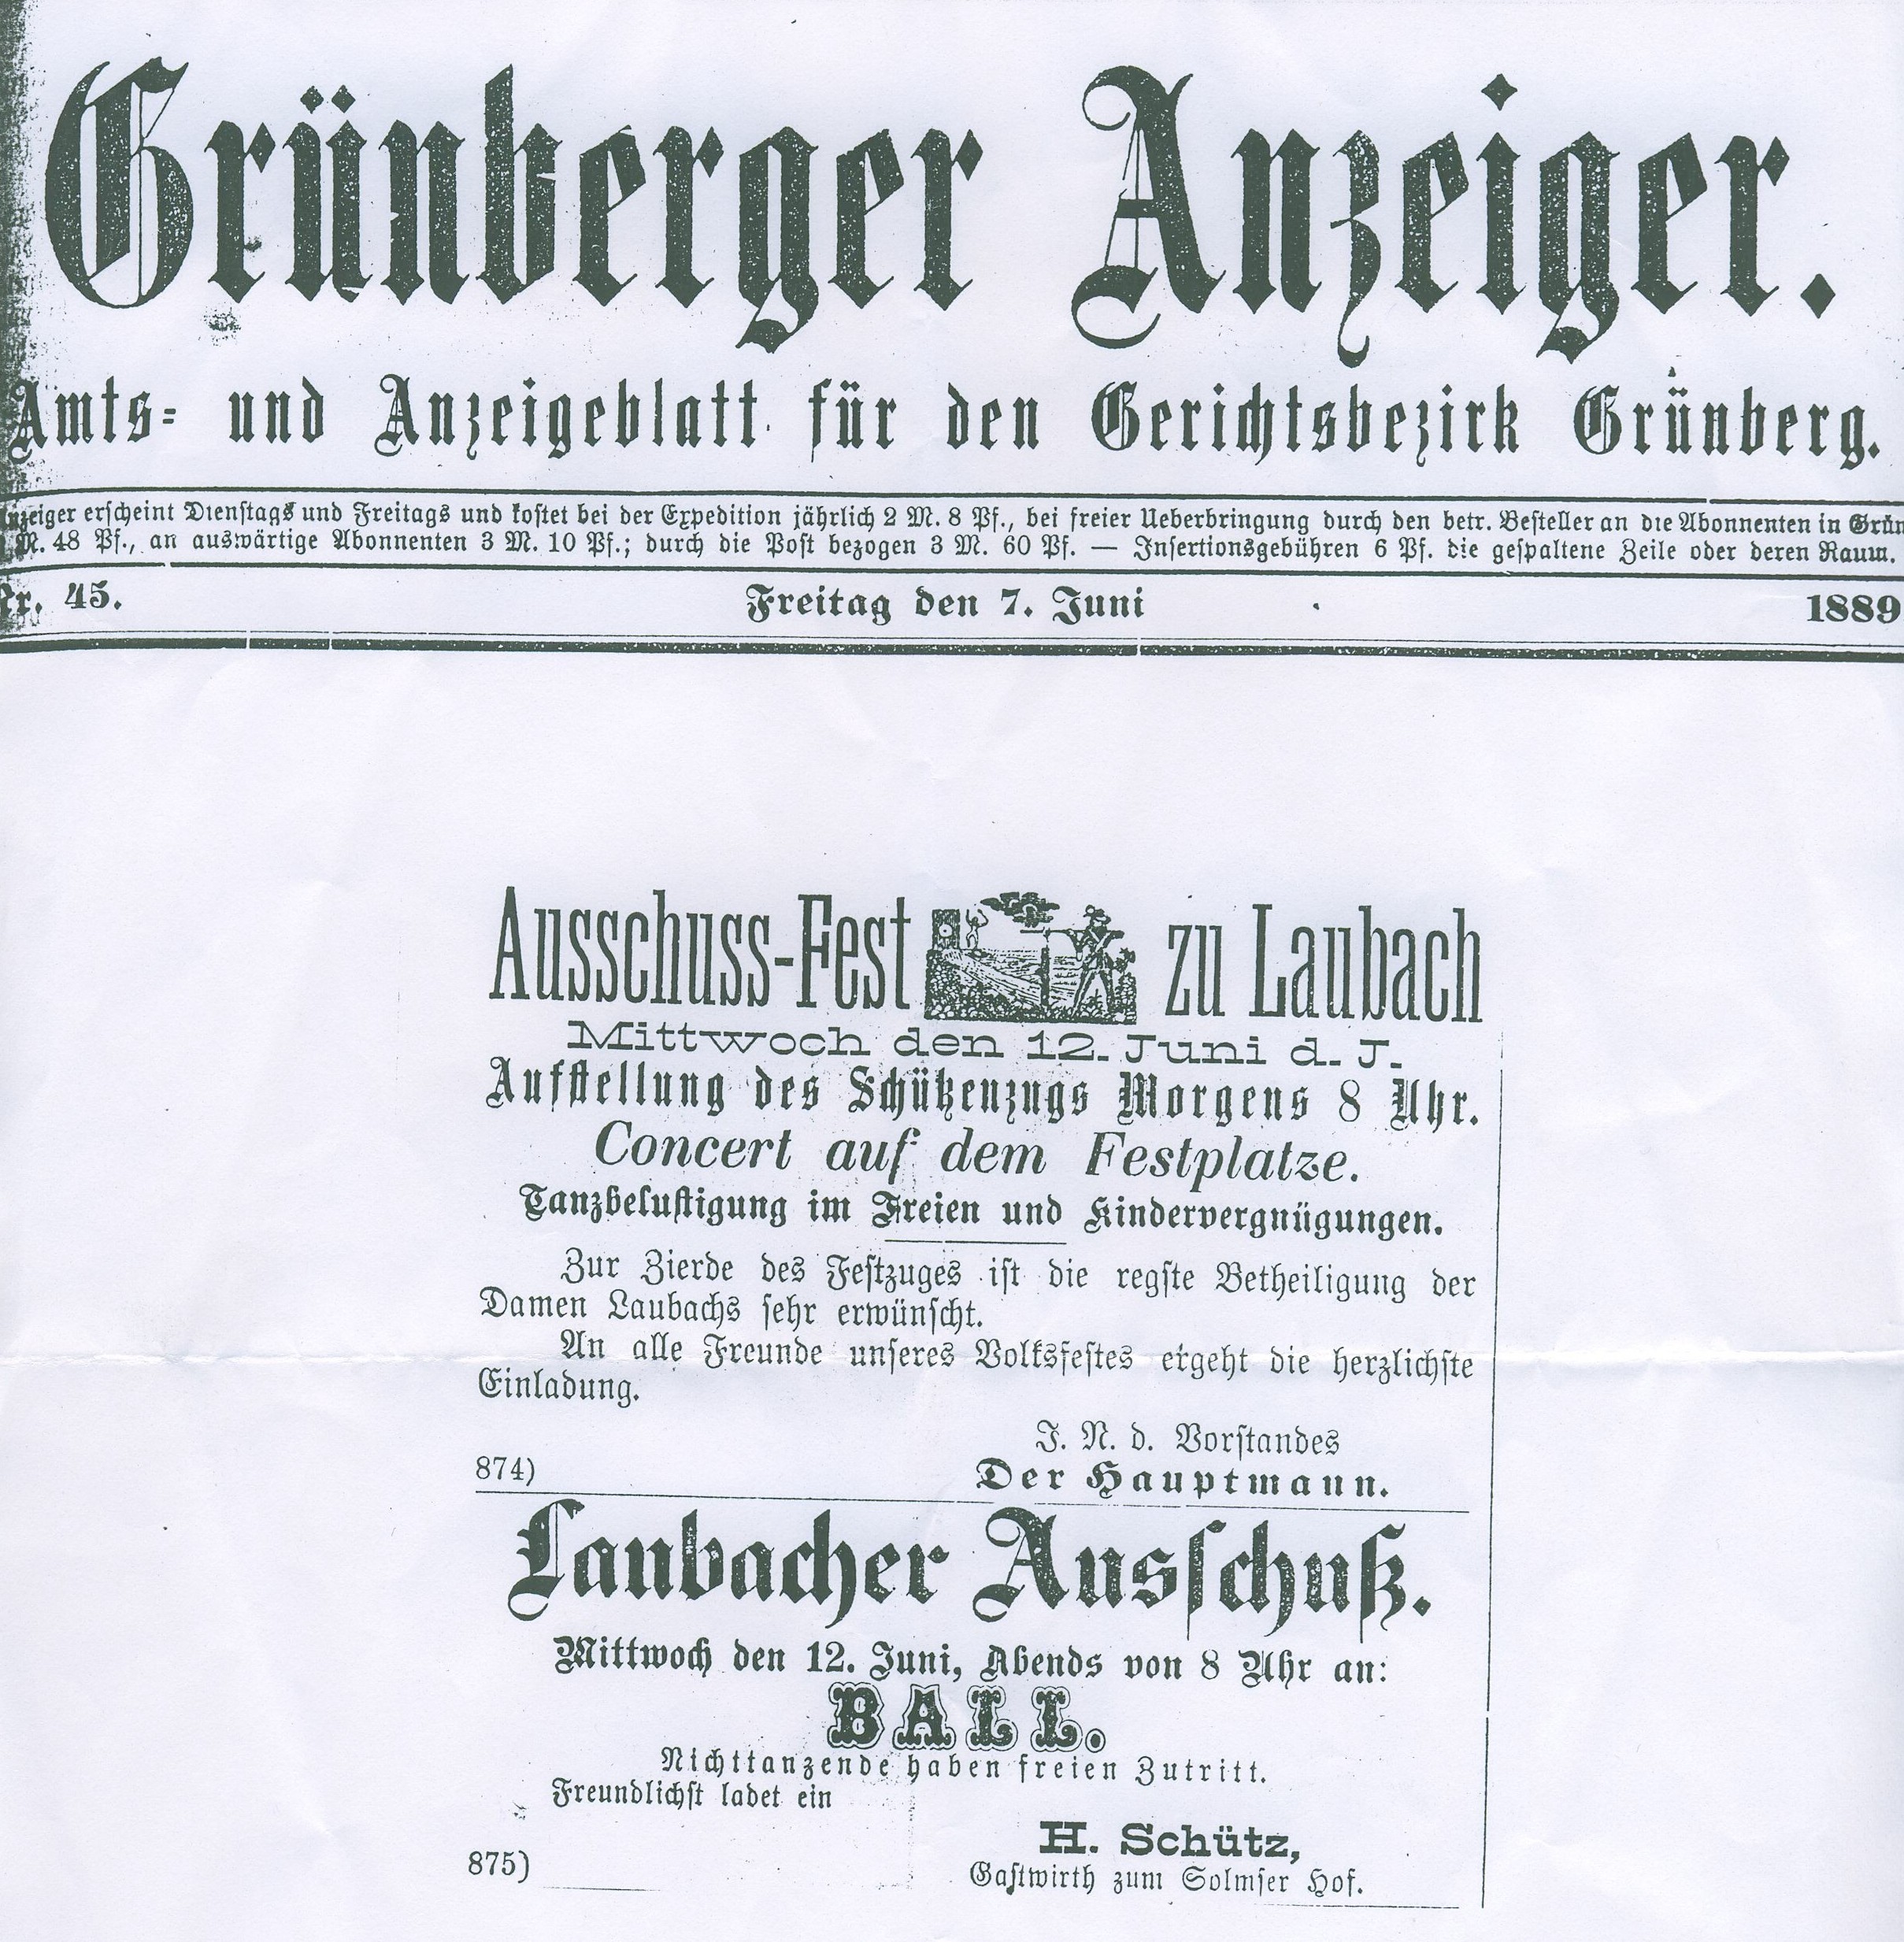 Laubacher Ausschussfest, History 002